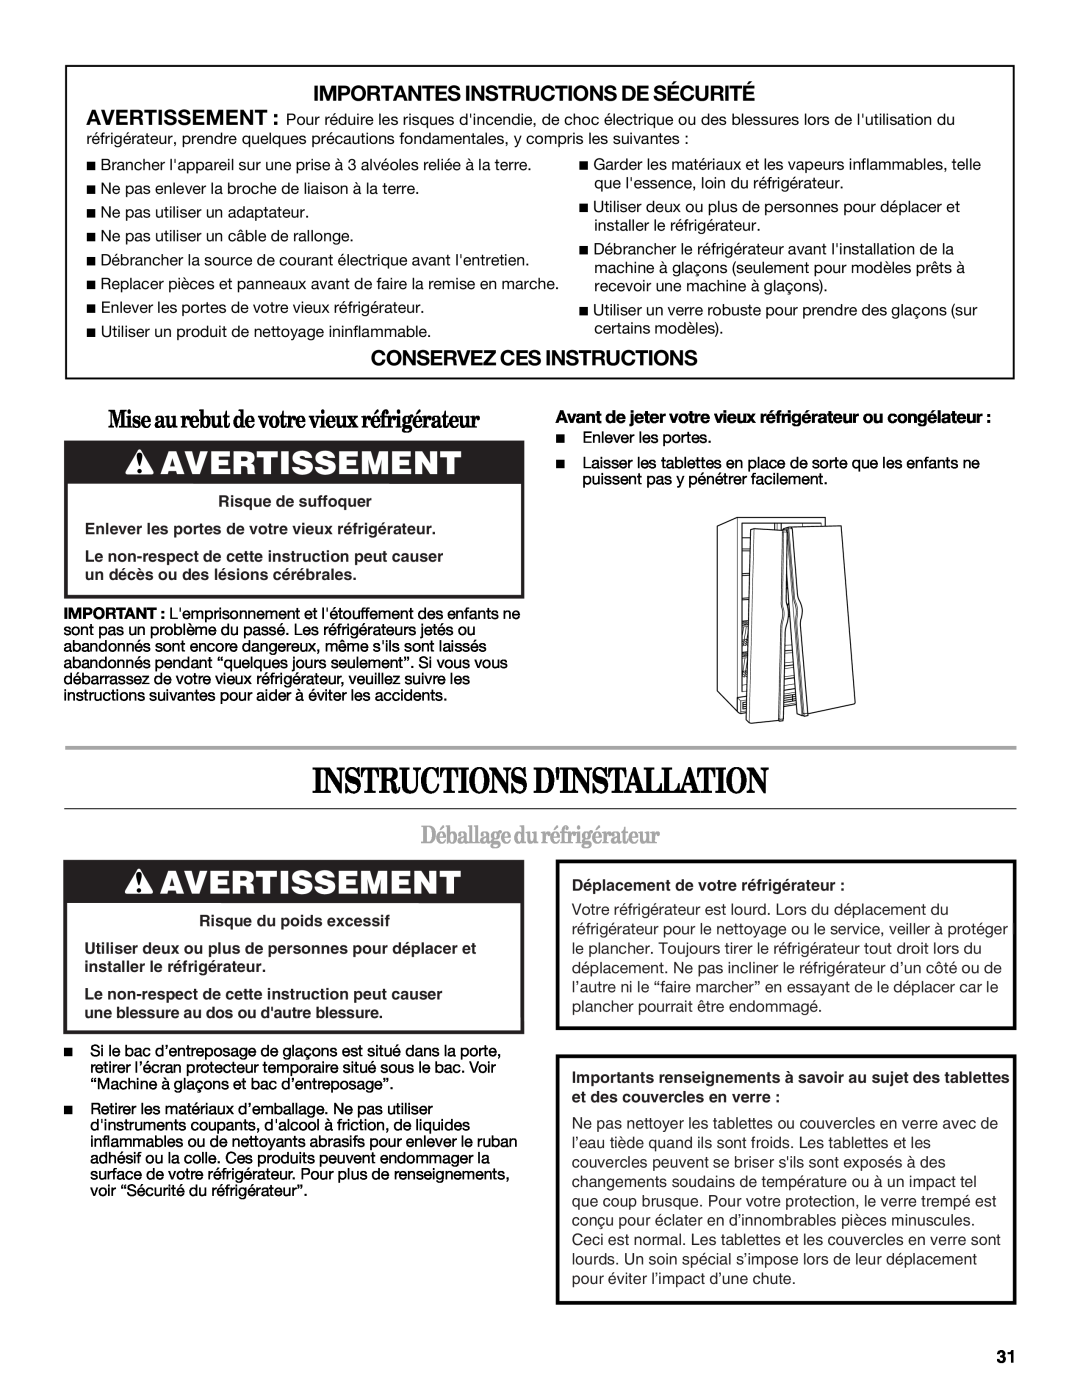 Whirlpool W10134555A warranty Instructions Dinstallation, Avertissement, Mise au rebutde votre vieux réfrigérateur 